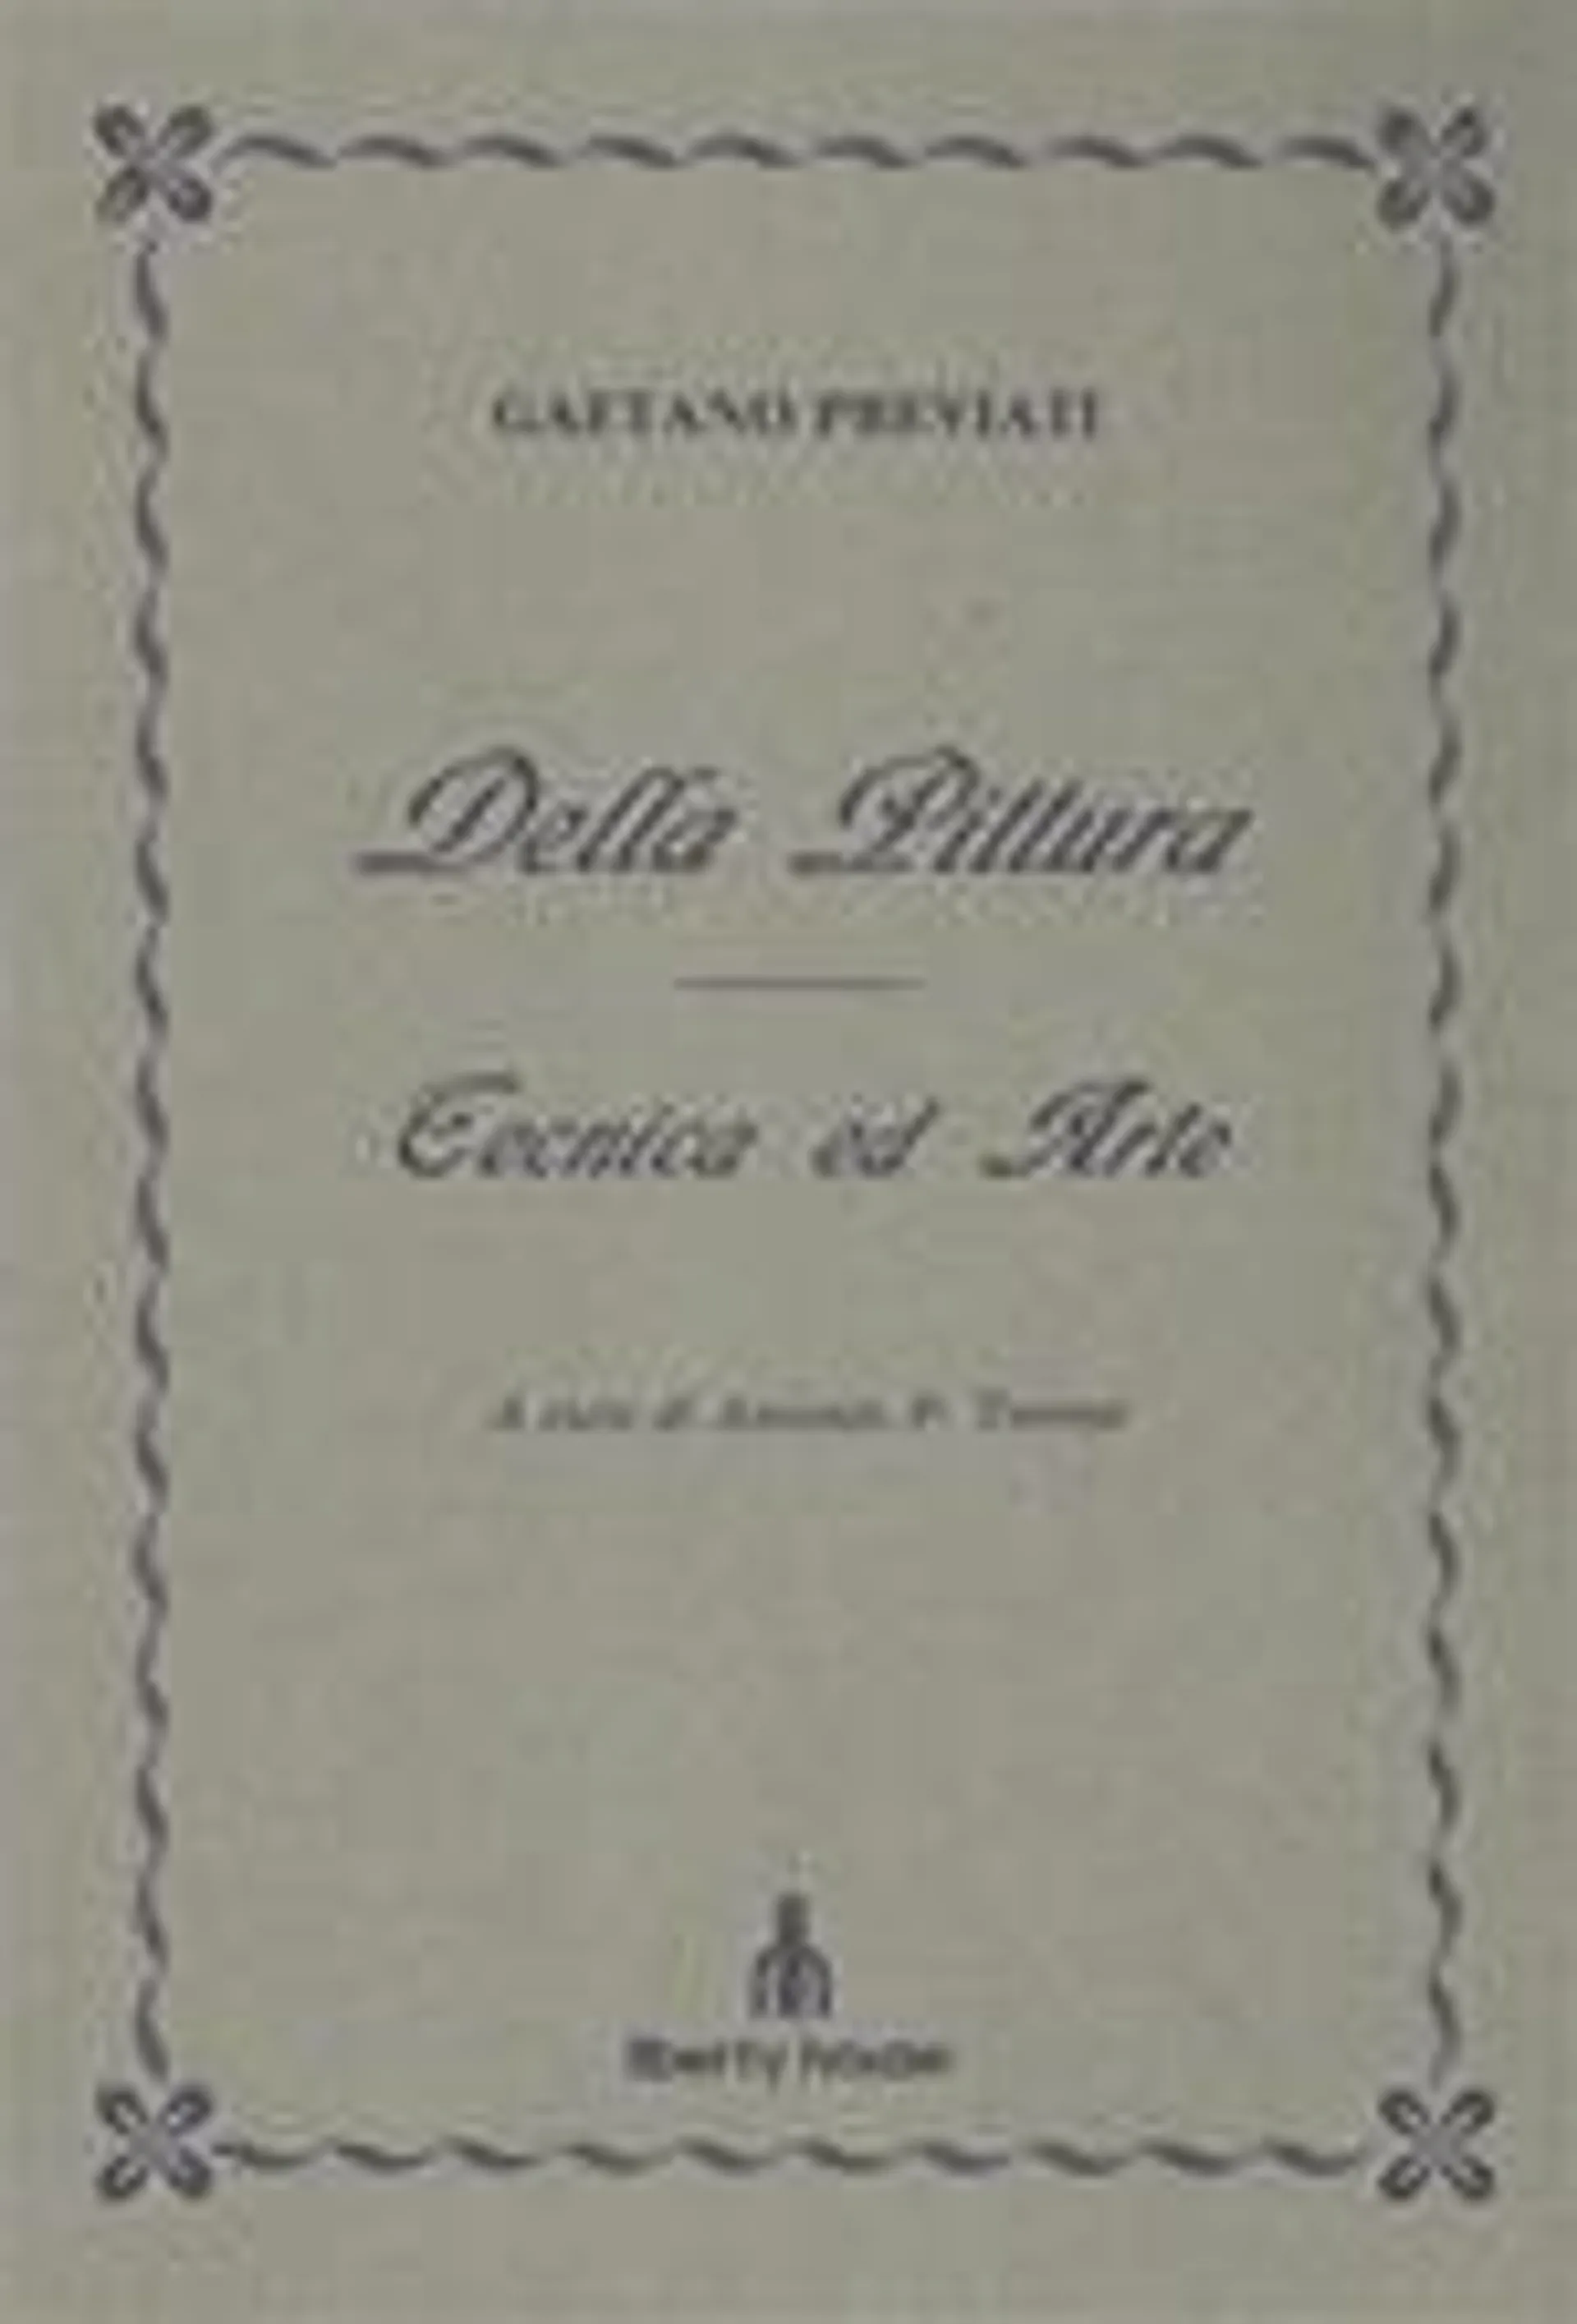 Della Pittura. Tecnica ed arte. Gaetano Previati ( Ferrara, 1852 - Lavagna, 1920 ). Dopo aver frequentato la scuol